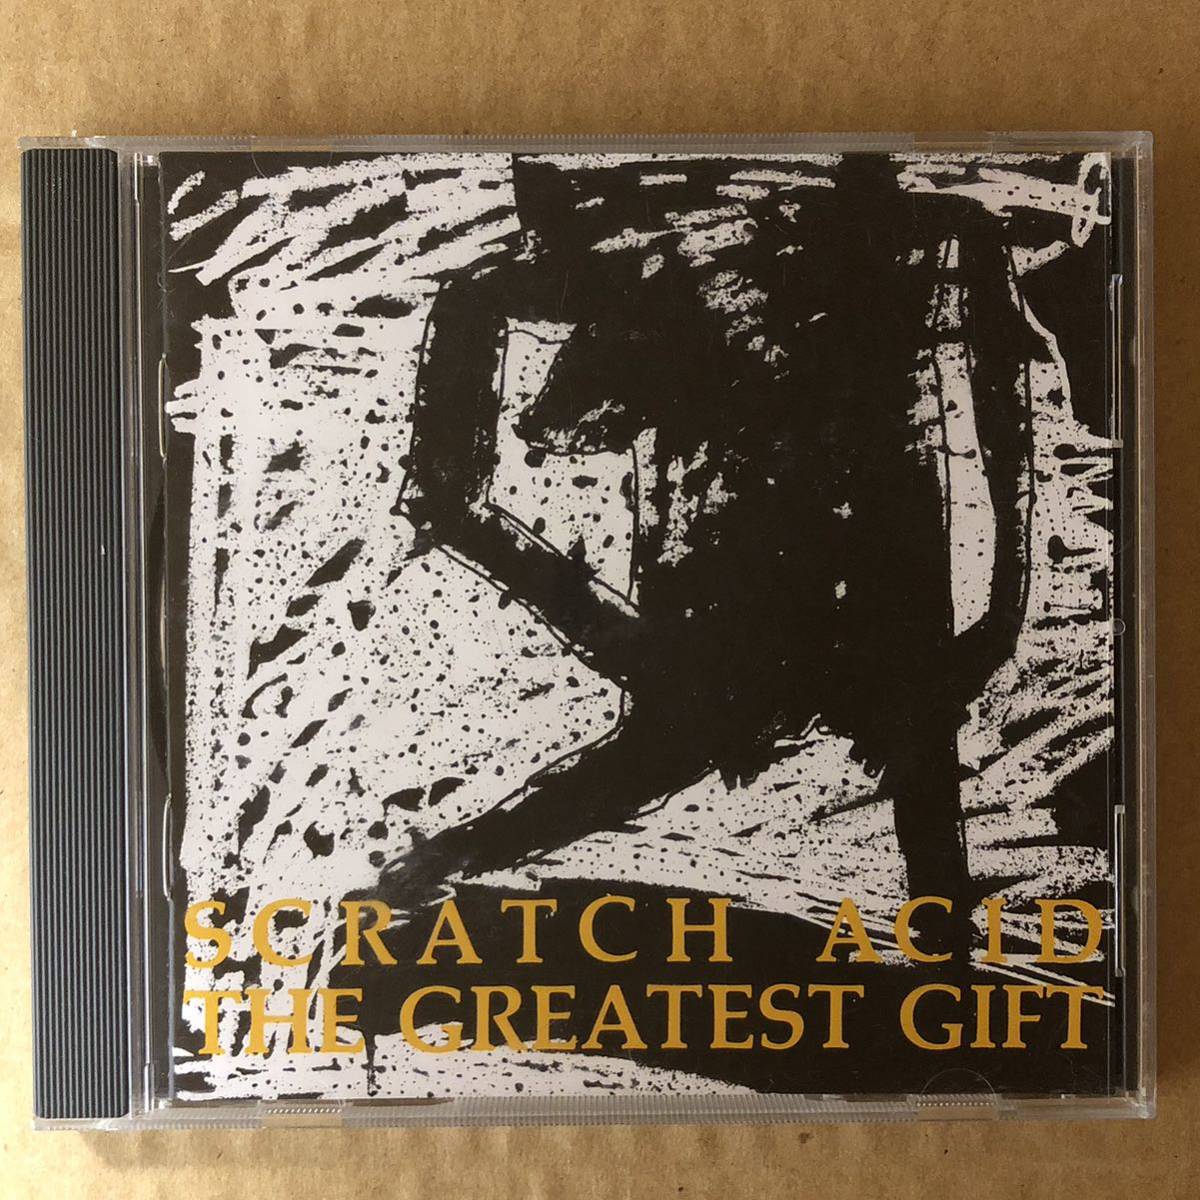 D02 中古CD Scratch Acid The Greatest Gift スクラッチアシッド ジーザスリザード_画像1